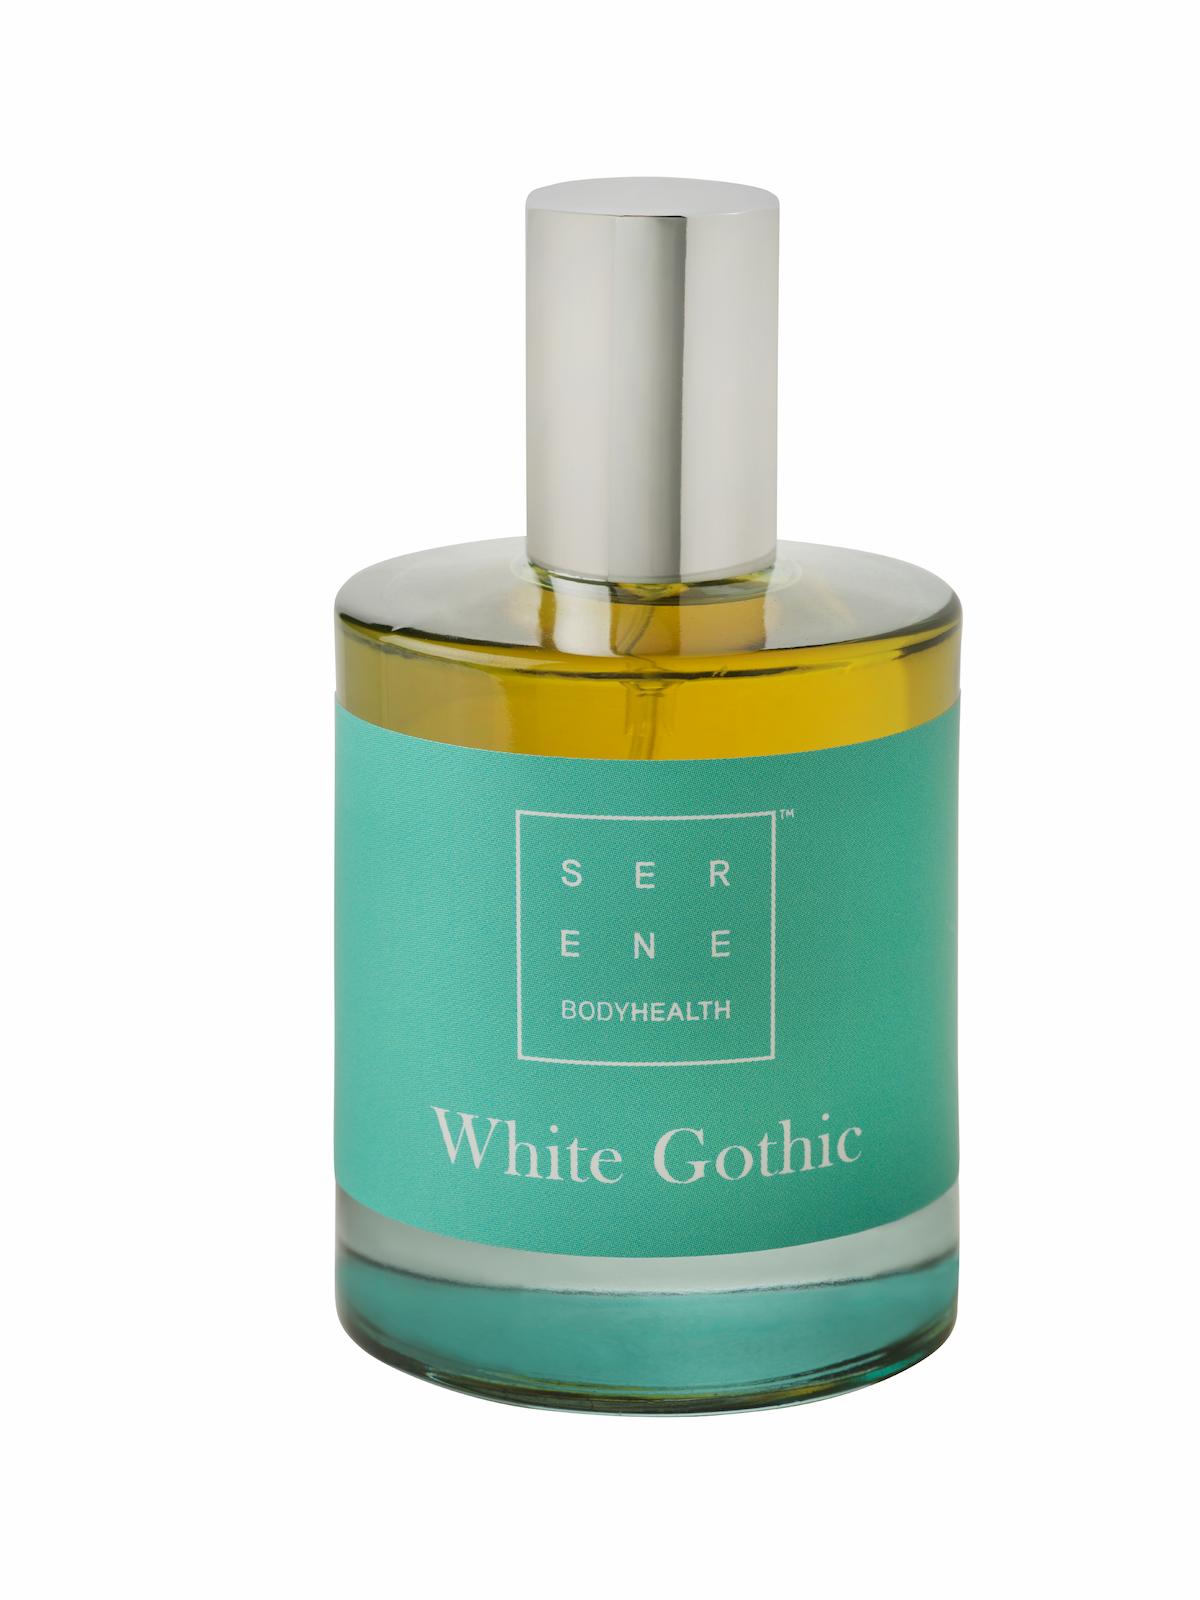 Serene Body Health White Gothic Eau de Parfum 50ml